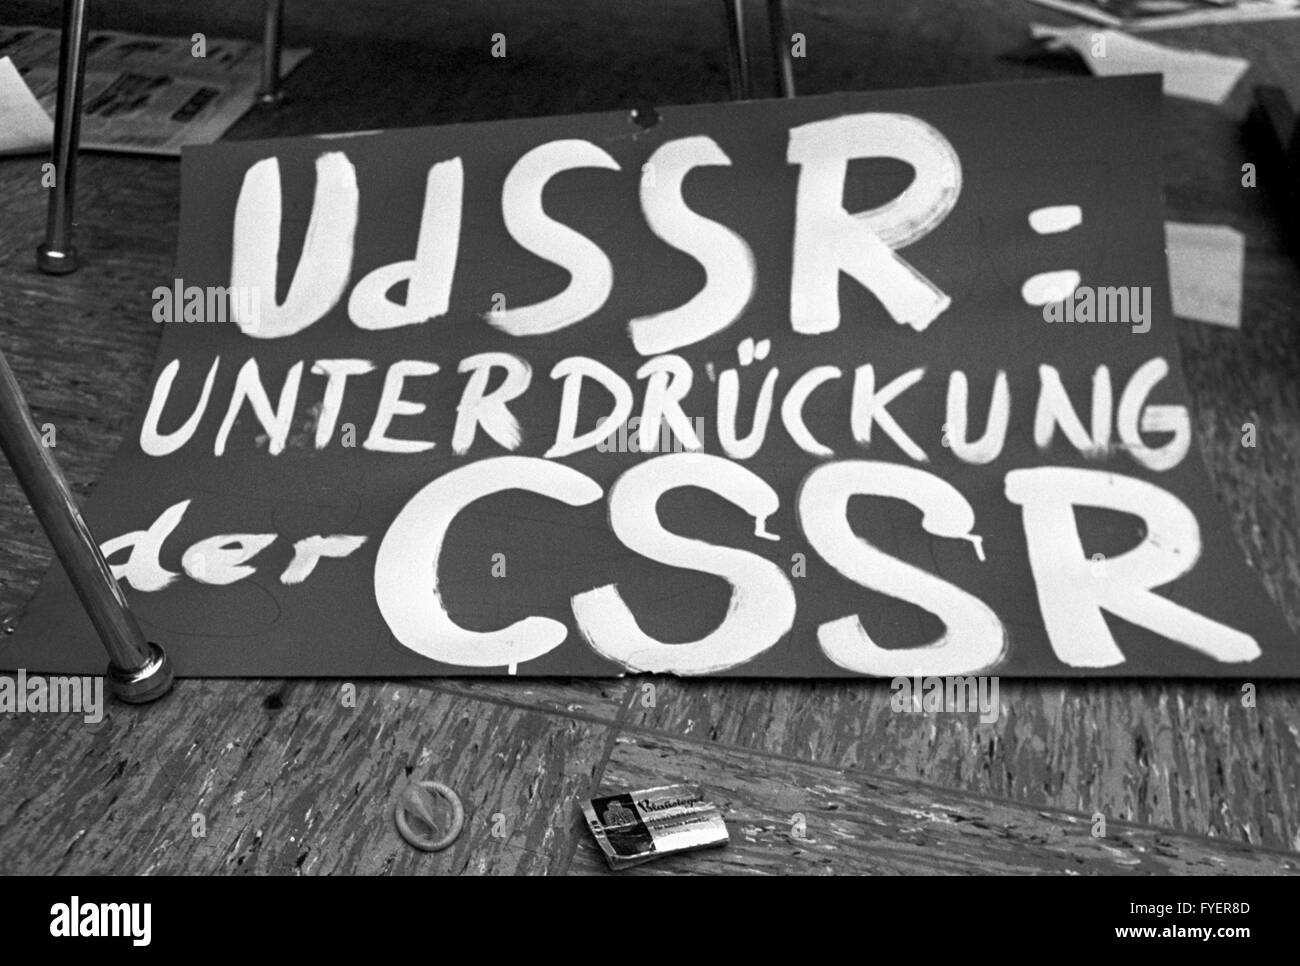 Bannière disant 'URSS =oppression de la Tchécoslovaquie". Autour de 100 étudiants de la faculté des sciences sociales Université de la Ruhr de Bochum ont occupé la faculté le 16 décembre 1968. Banque D'Images